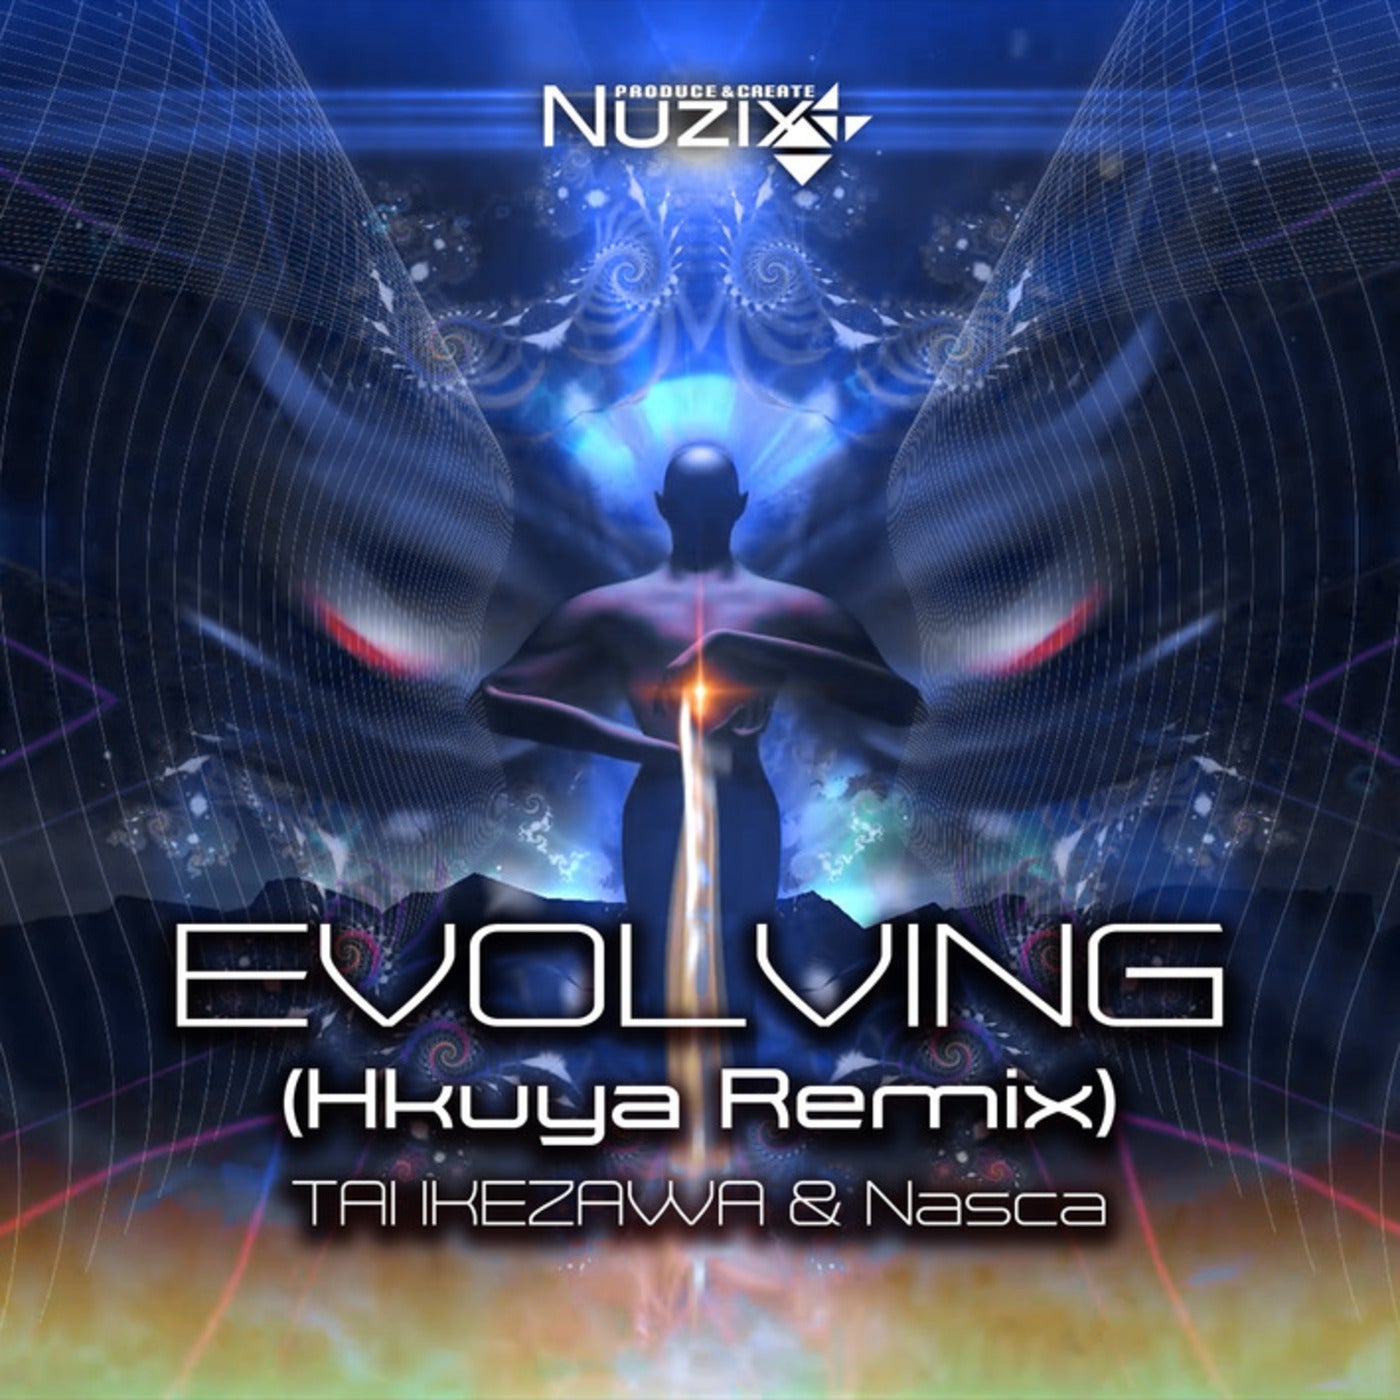 Evolving (Hkuya Remix)